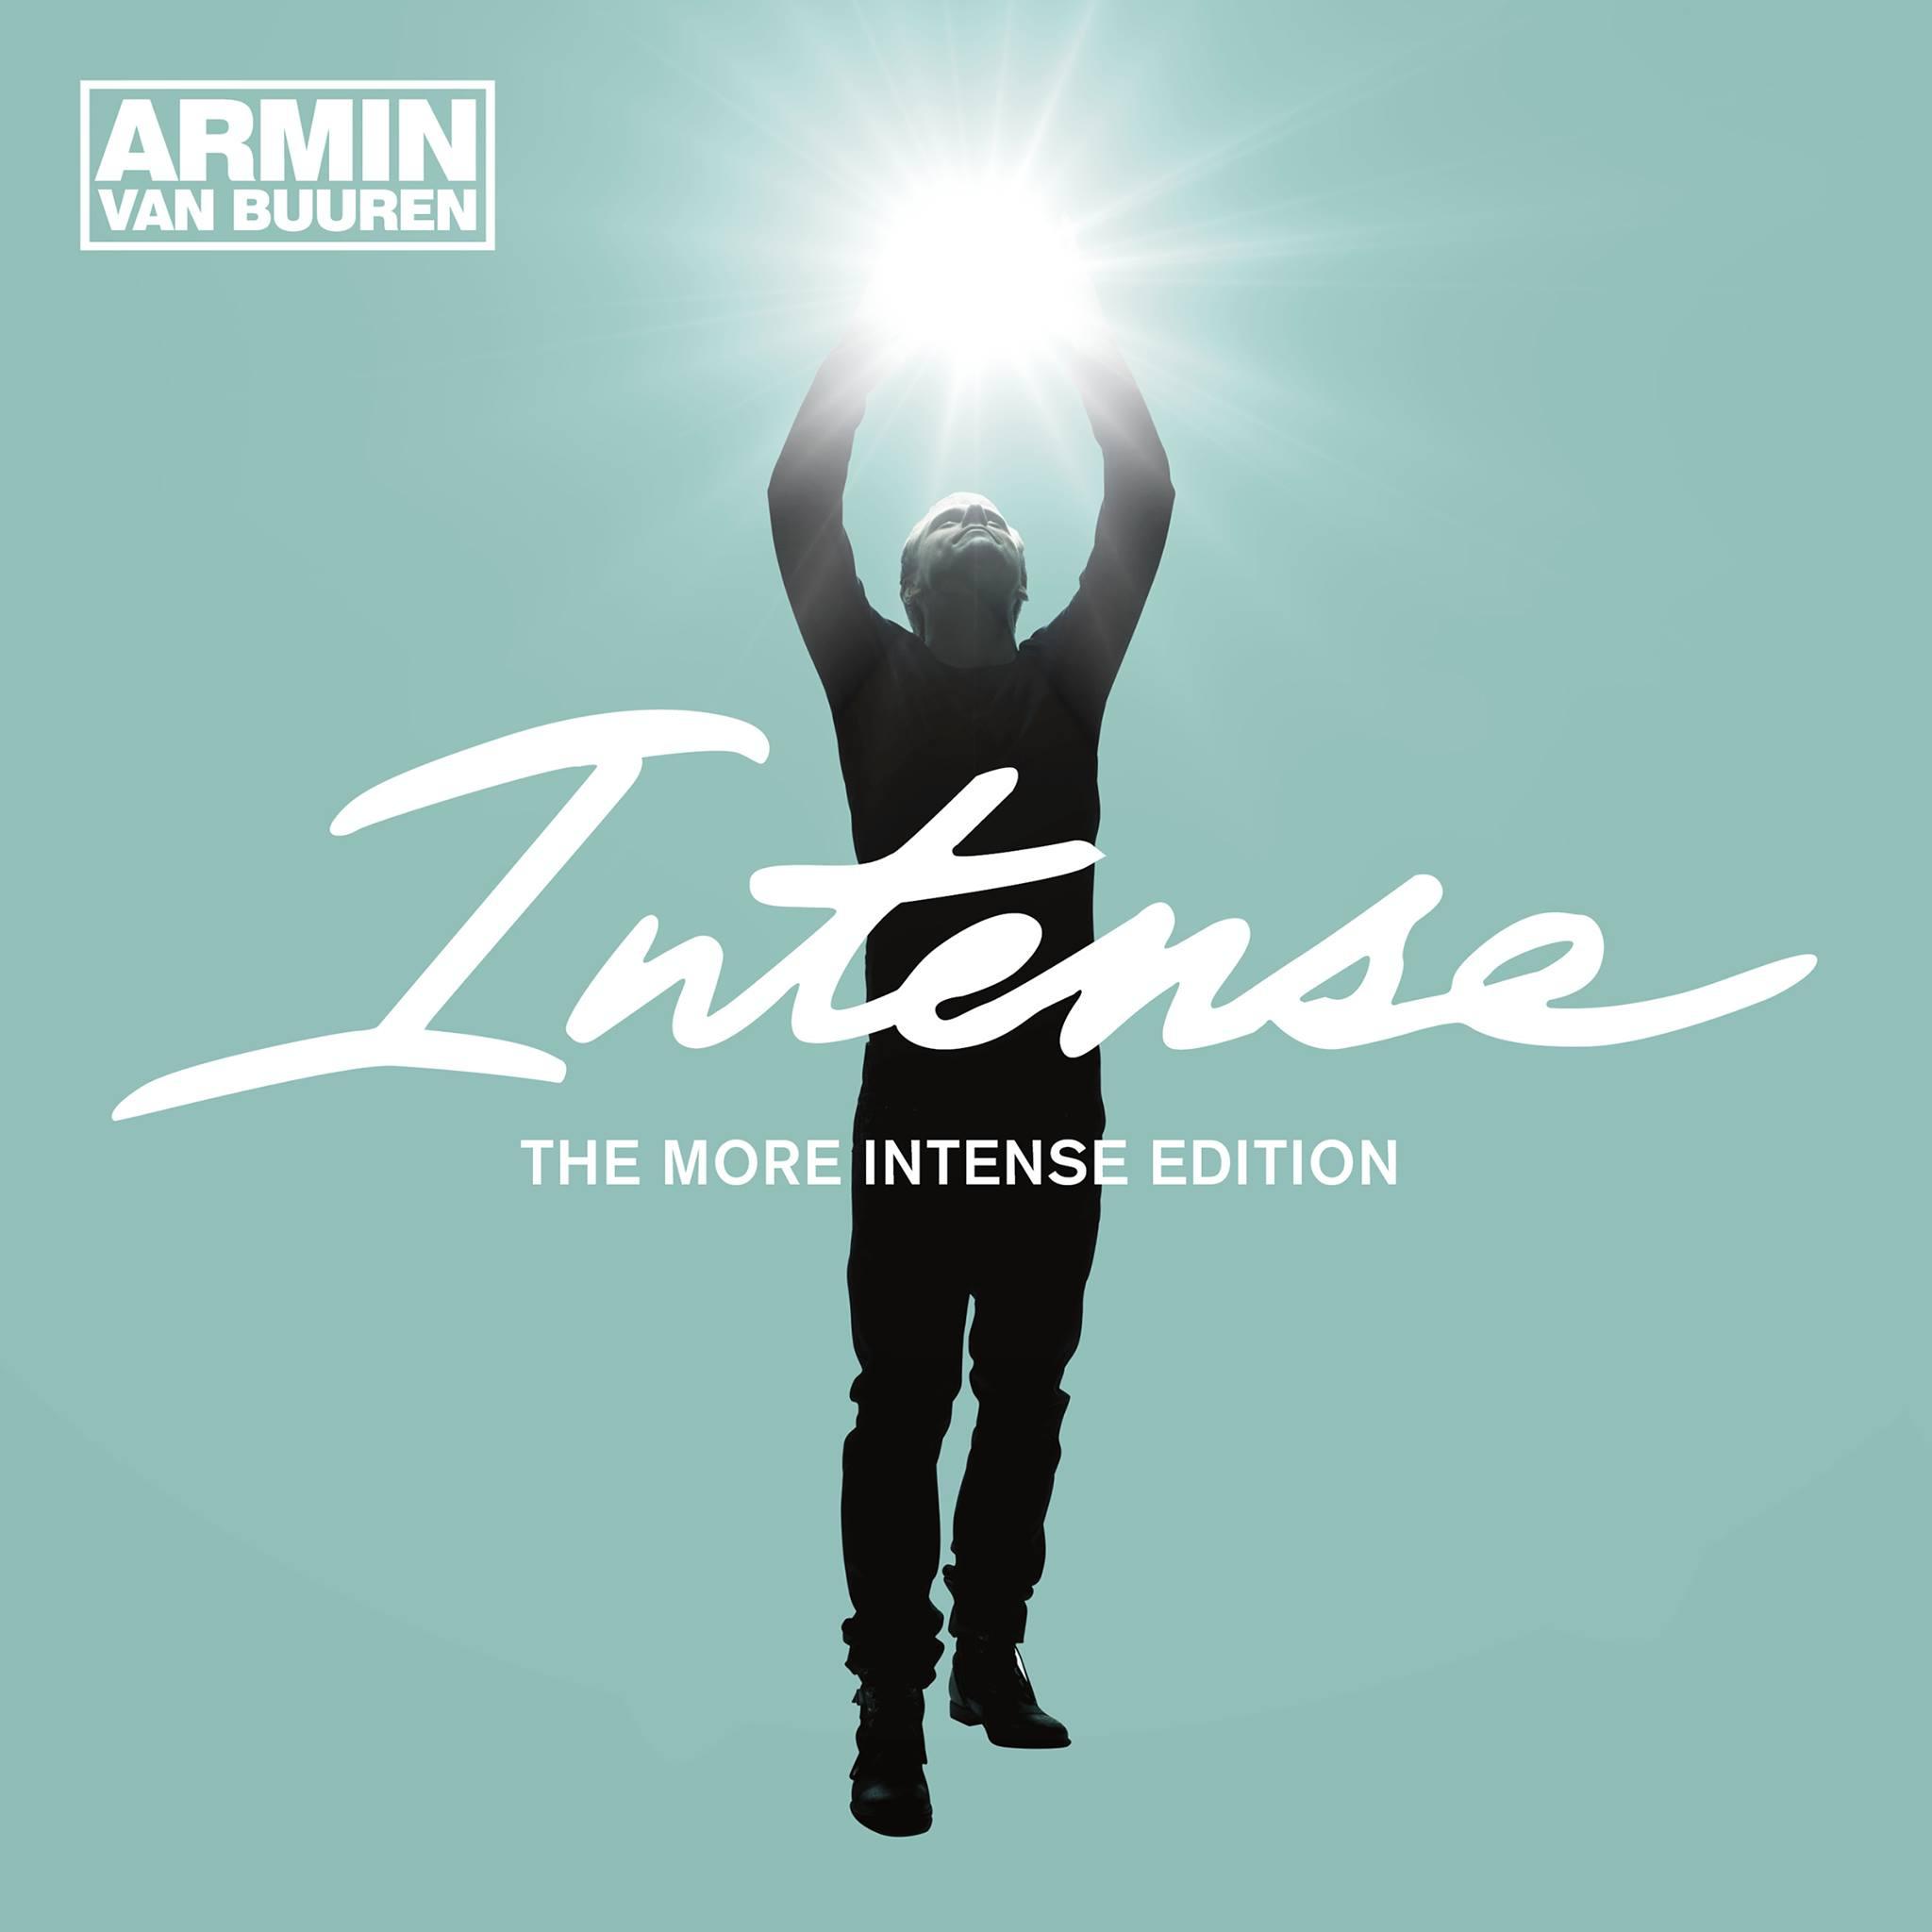 Armin van Buuren - Sound Of The Drums (Michael Brun Remix)